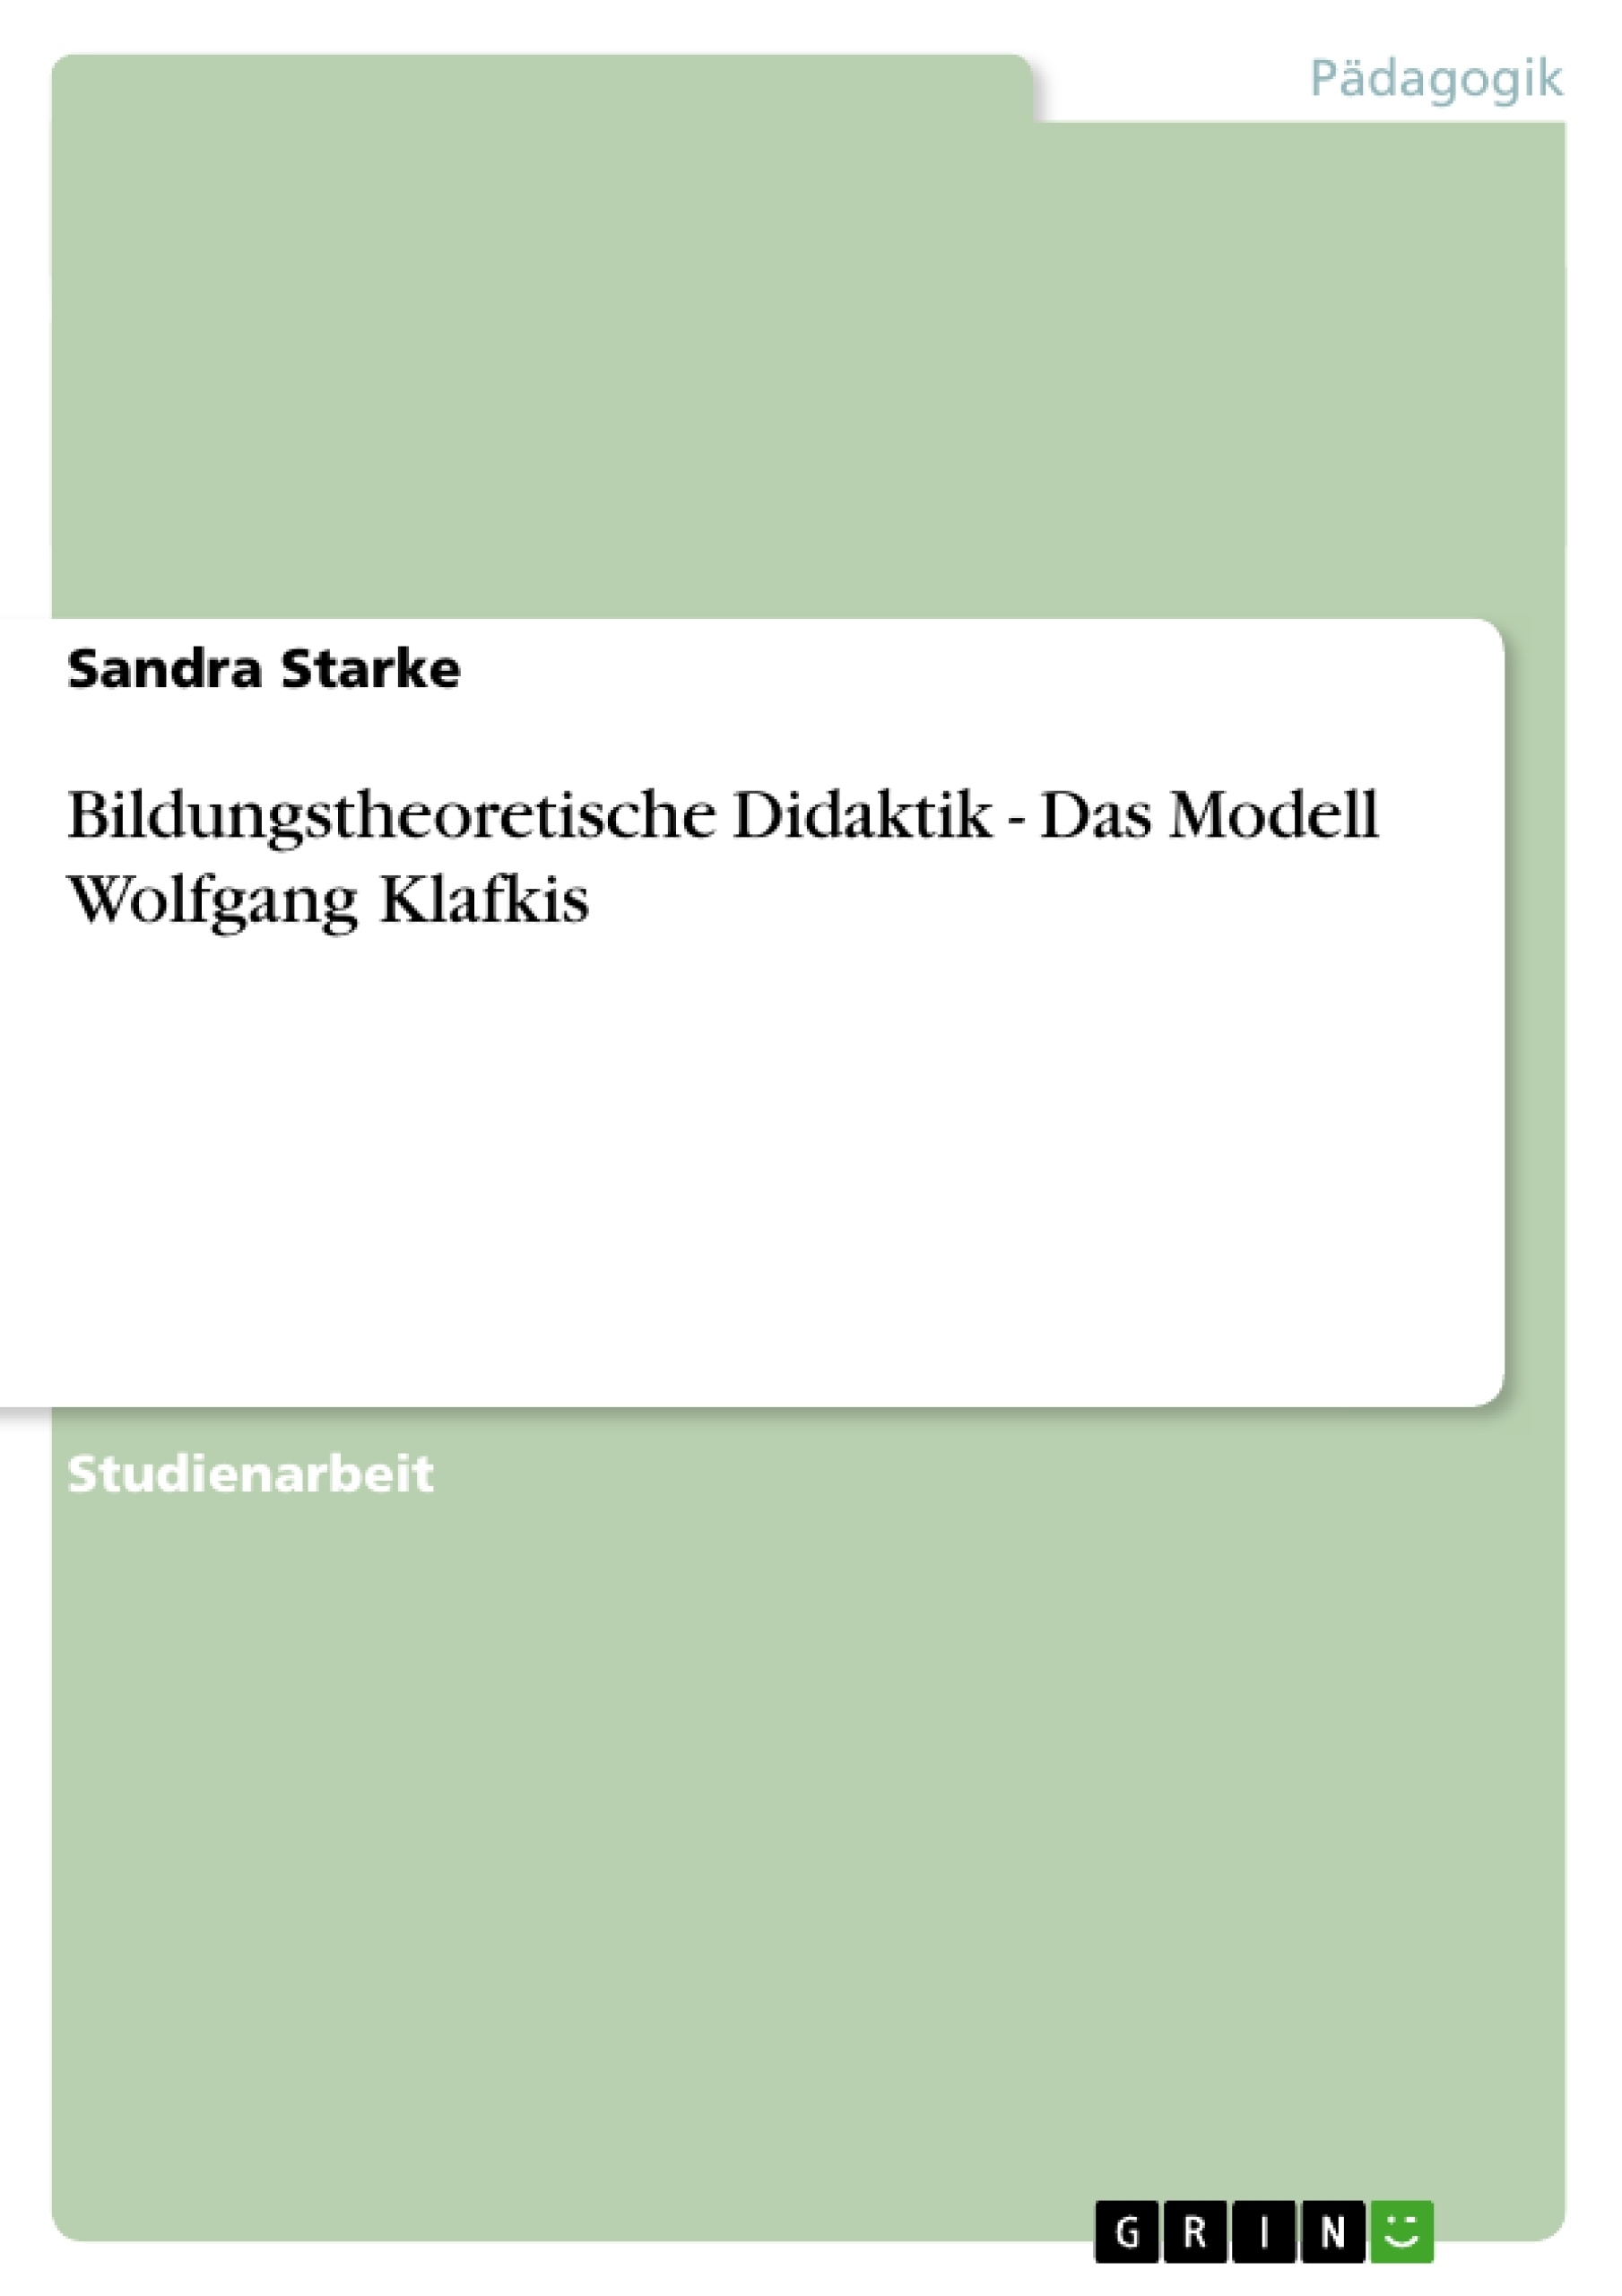 Title: Bildungstheoretische Didaktik - Das Modell Wolfgang Klafkis